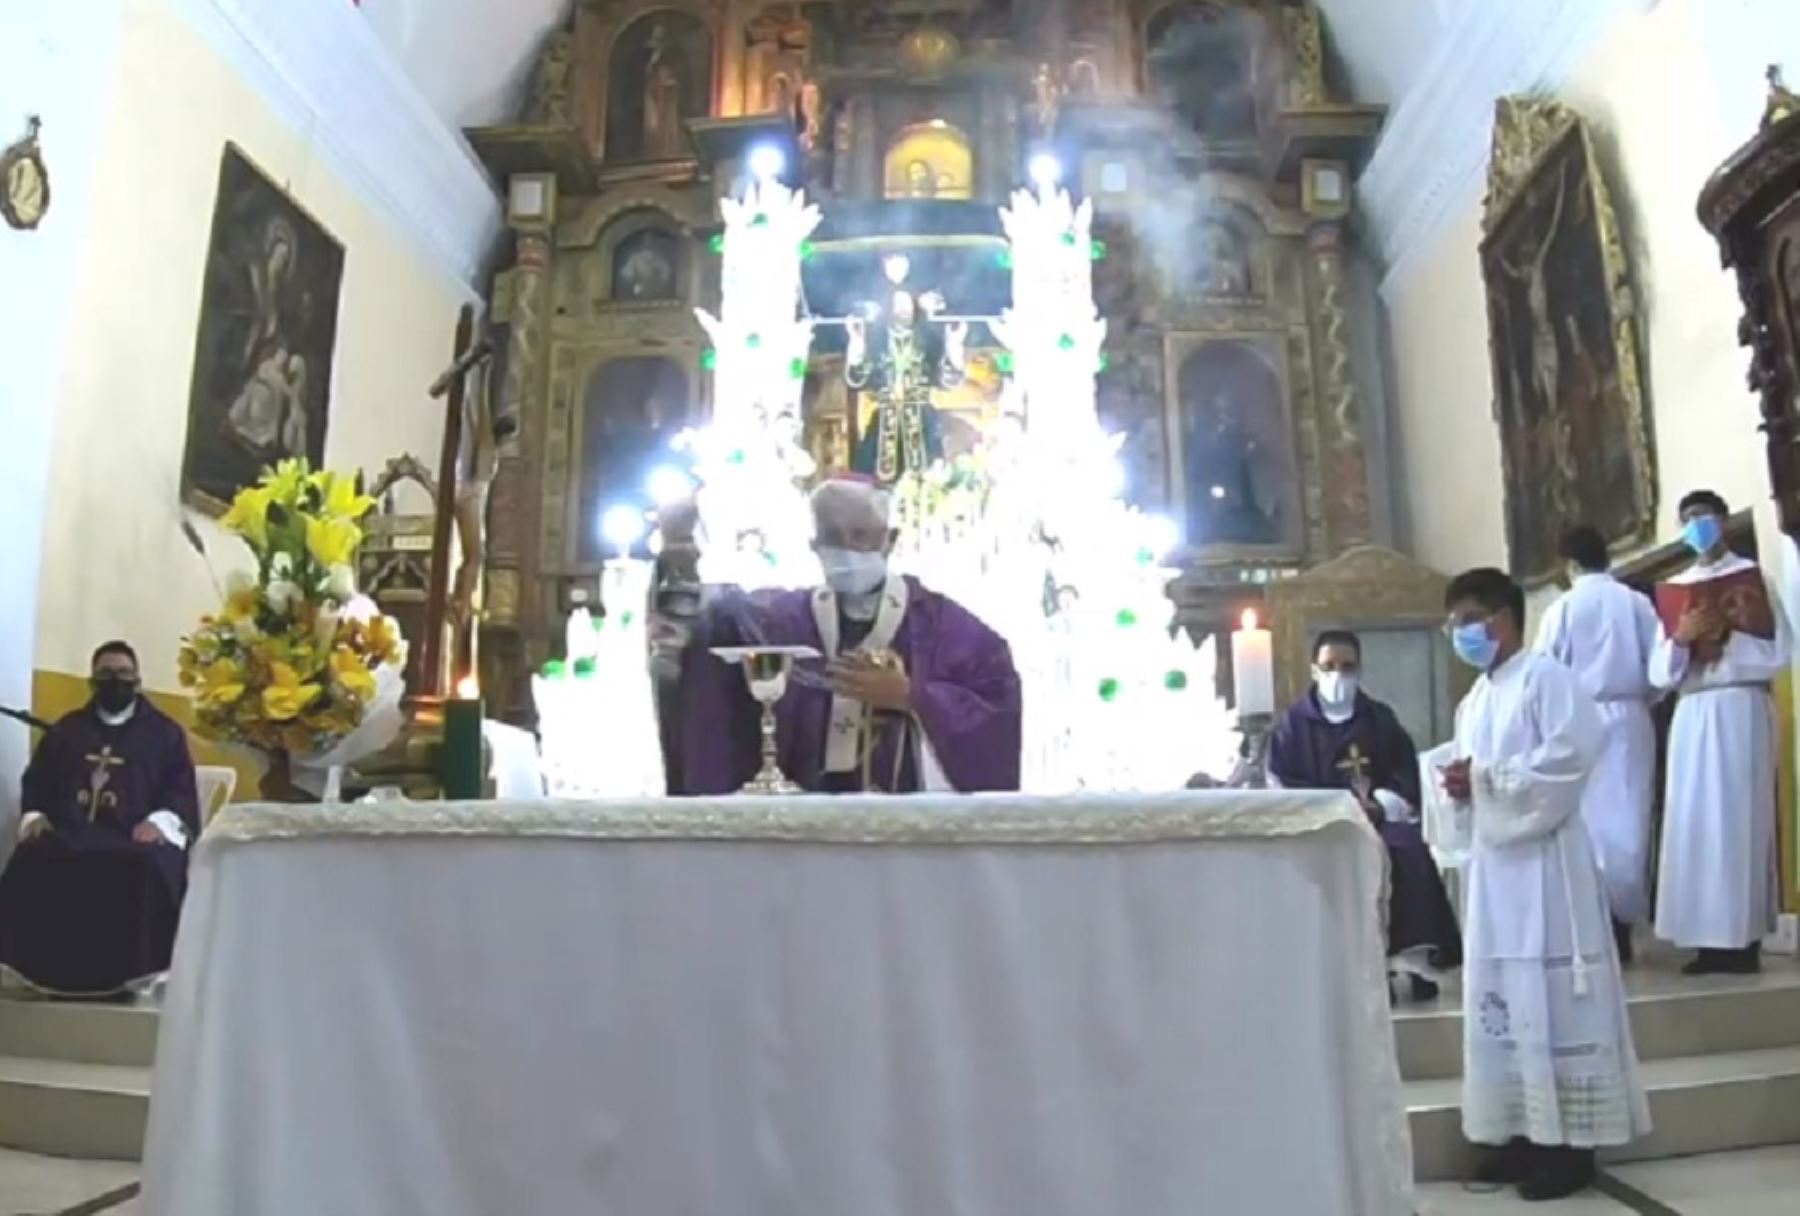 Arzobispo de Ayacucho, monseñor Salvador Piñeiro, celebra misa en honor al Señor del Huerto, en el marco de la Semana Santa que se celebra este 2021 de manera virtual debido a la pandemia del covid-19.